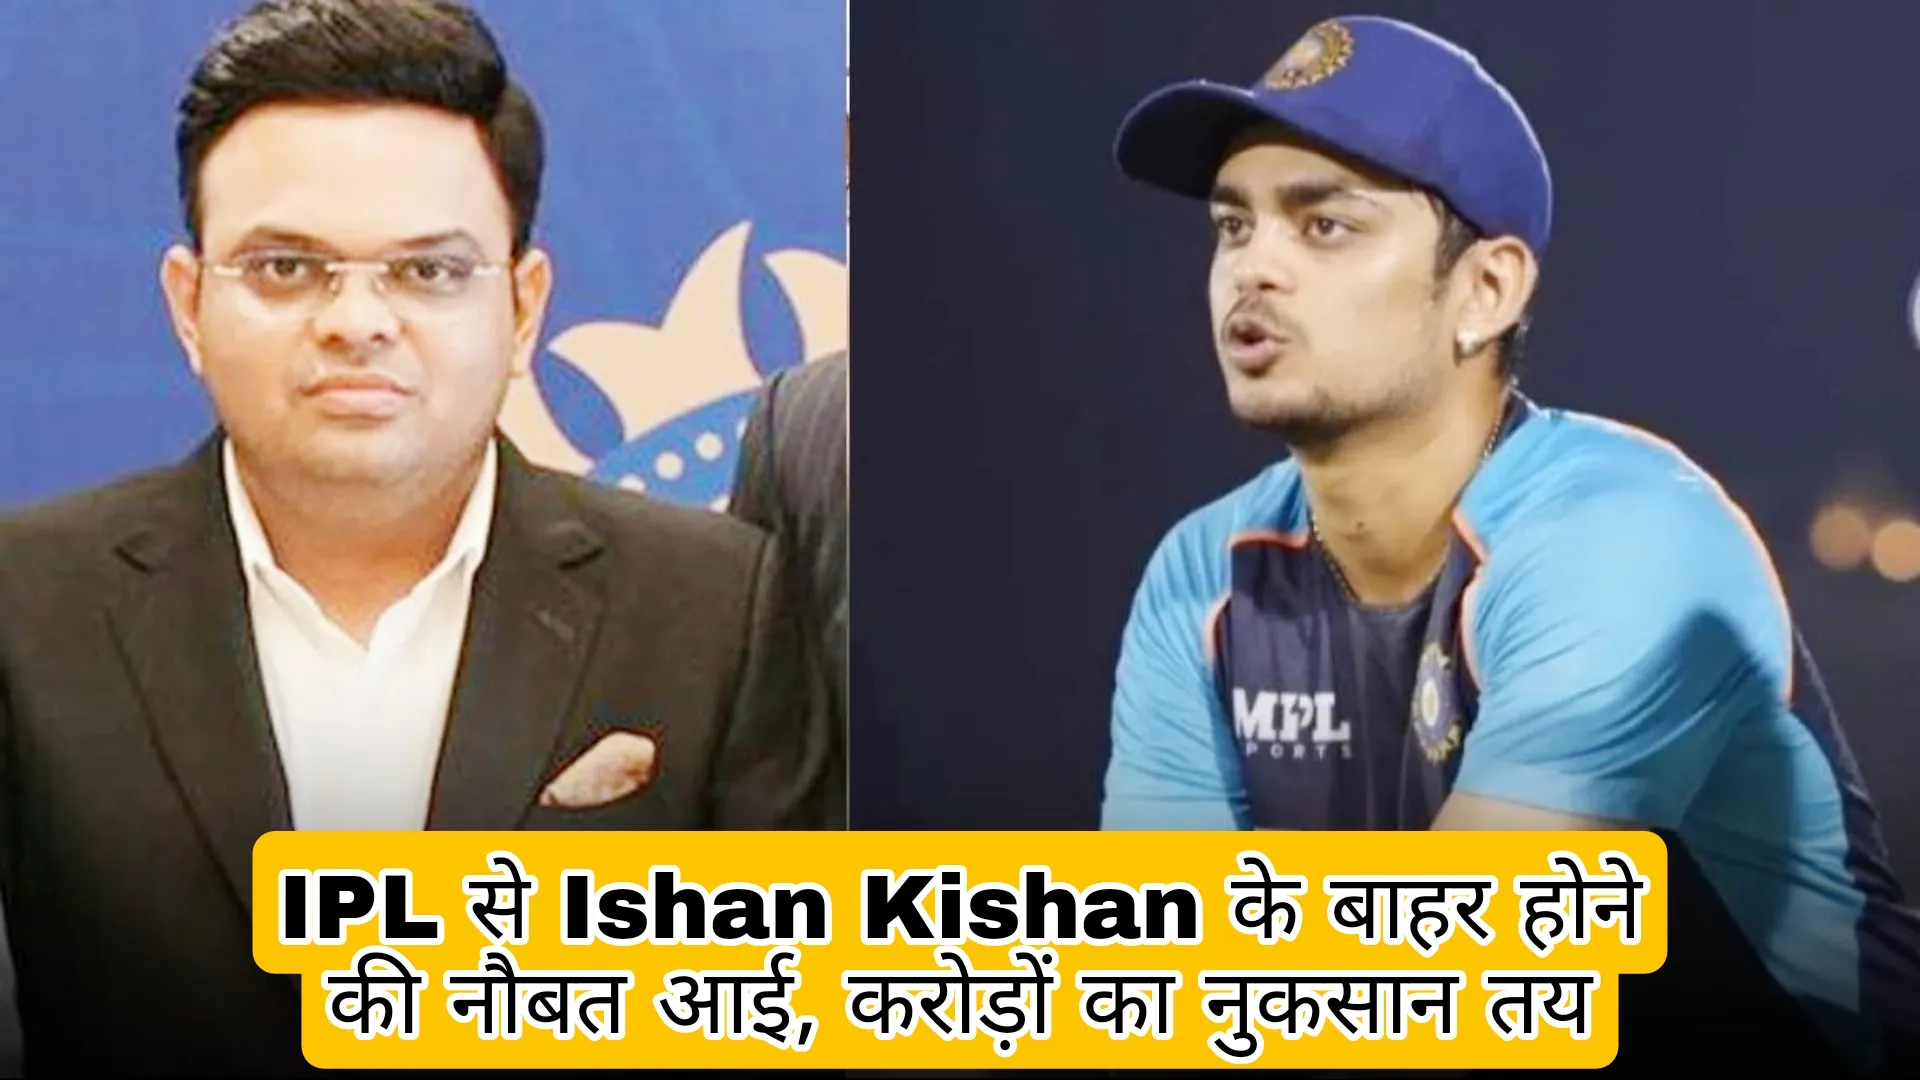 Ishan Kishan will be out of IPL